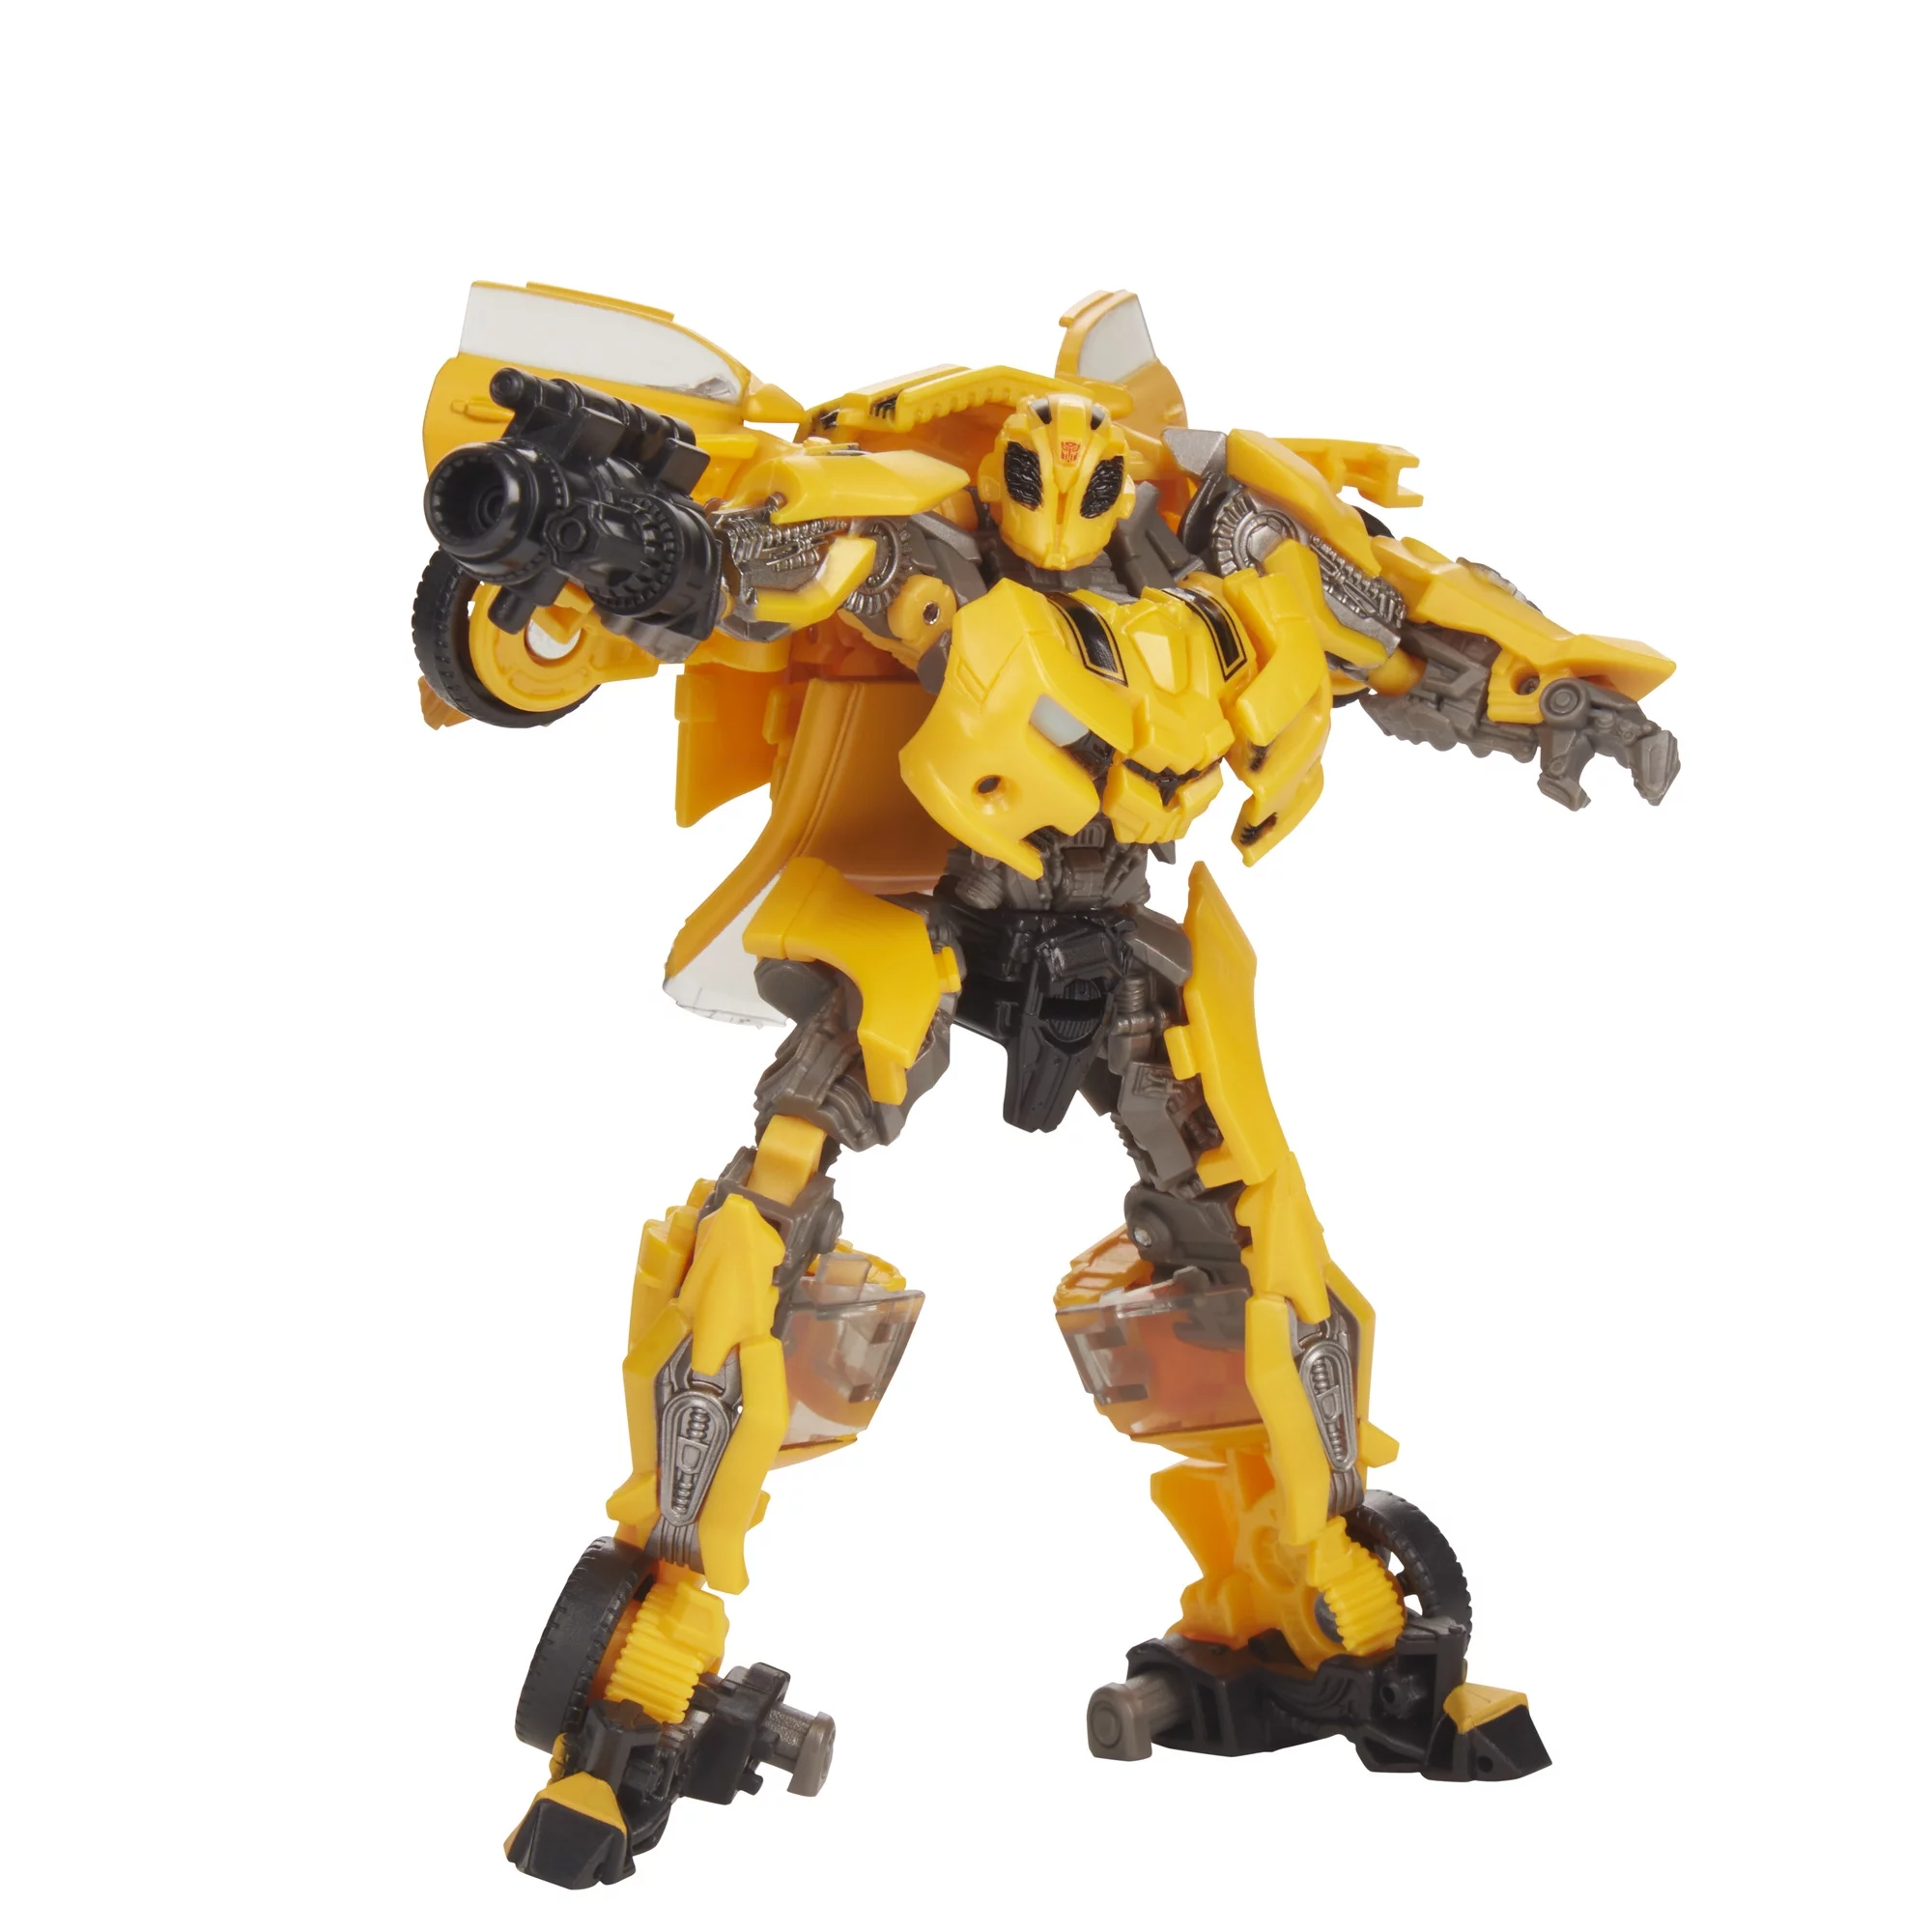 Transformers Studio Series Deluxe Class Movie 1 Bumblebee Action Figure